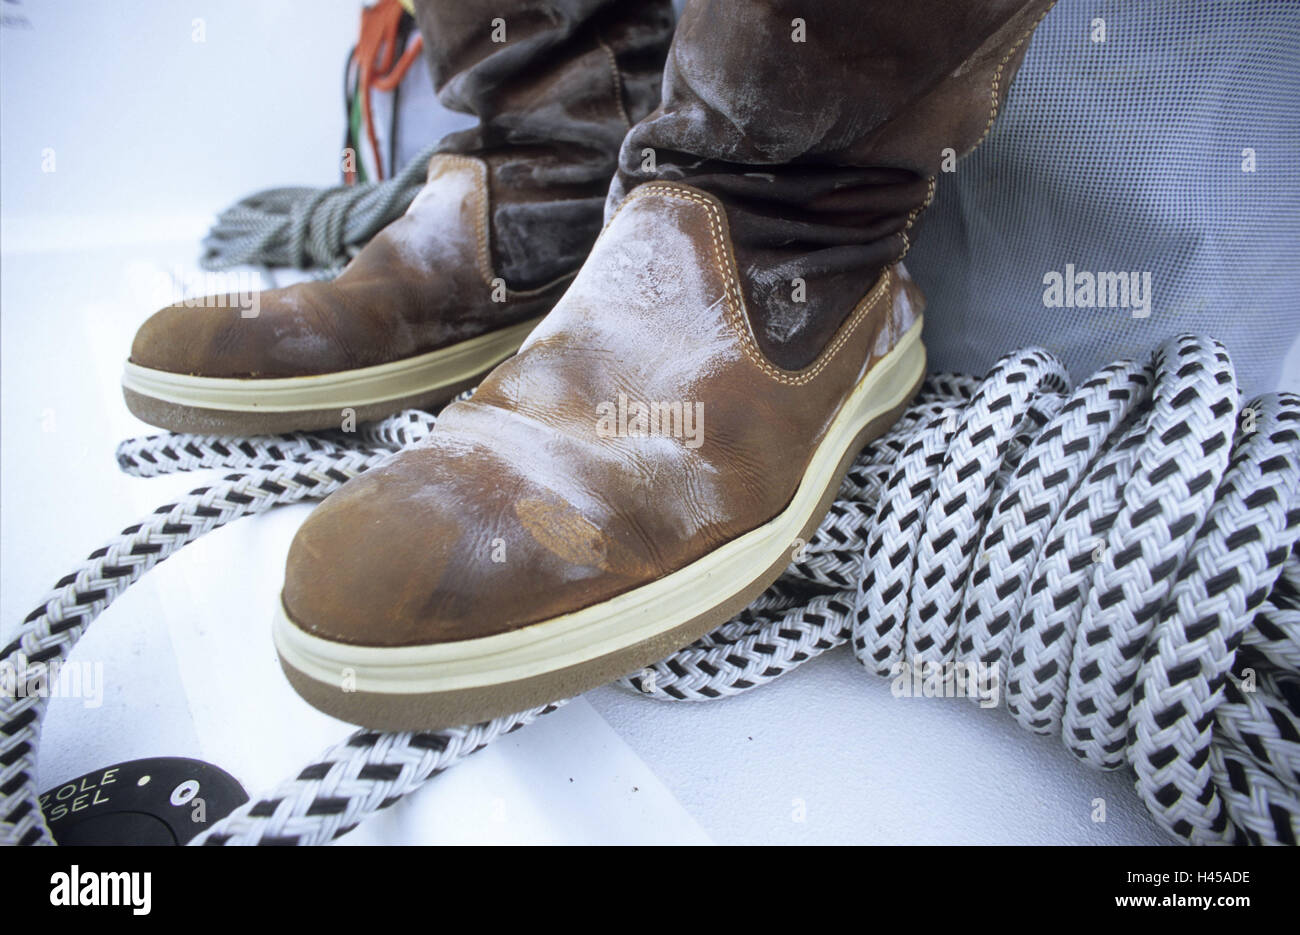 Yacht shoes immagini e fotografie stock ad alta risoluzione - Alamy